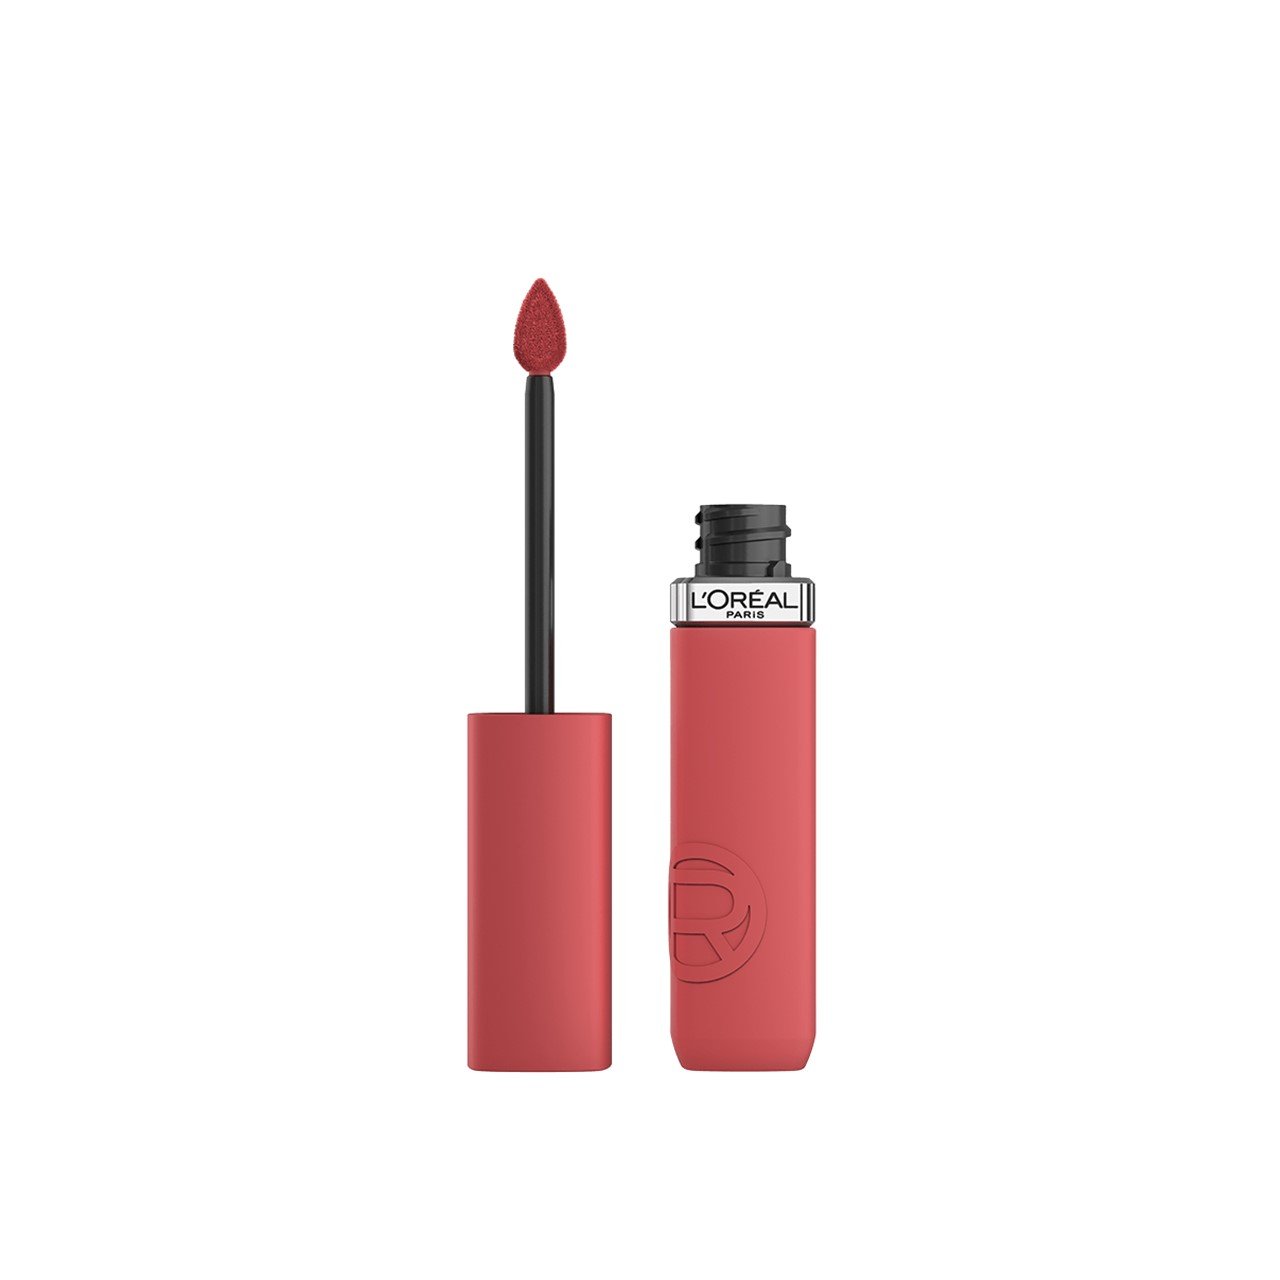 L'Oréal Paris Infallible Matte Resistance Liquid Lipstick 230 Shopping Spree 5ml (0.17 fl oz)